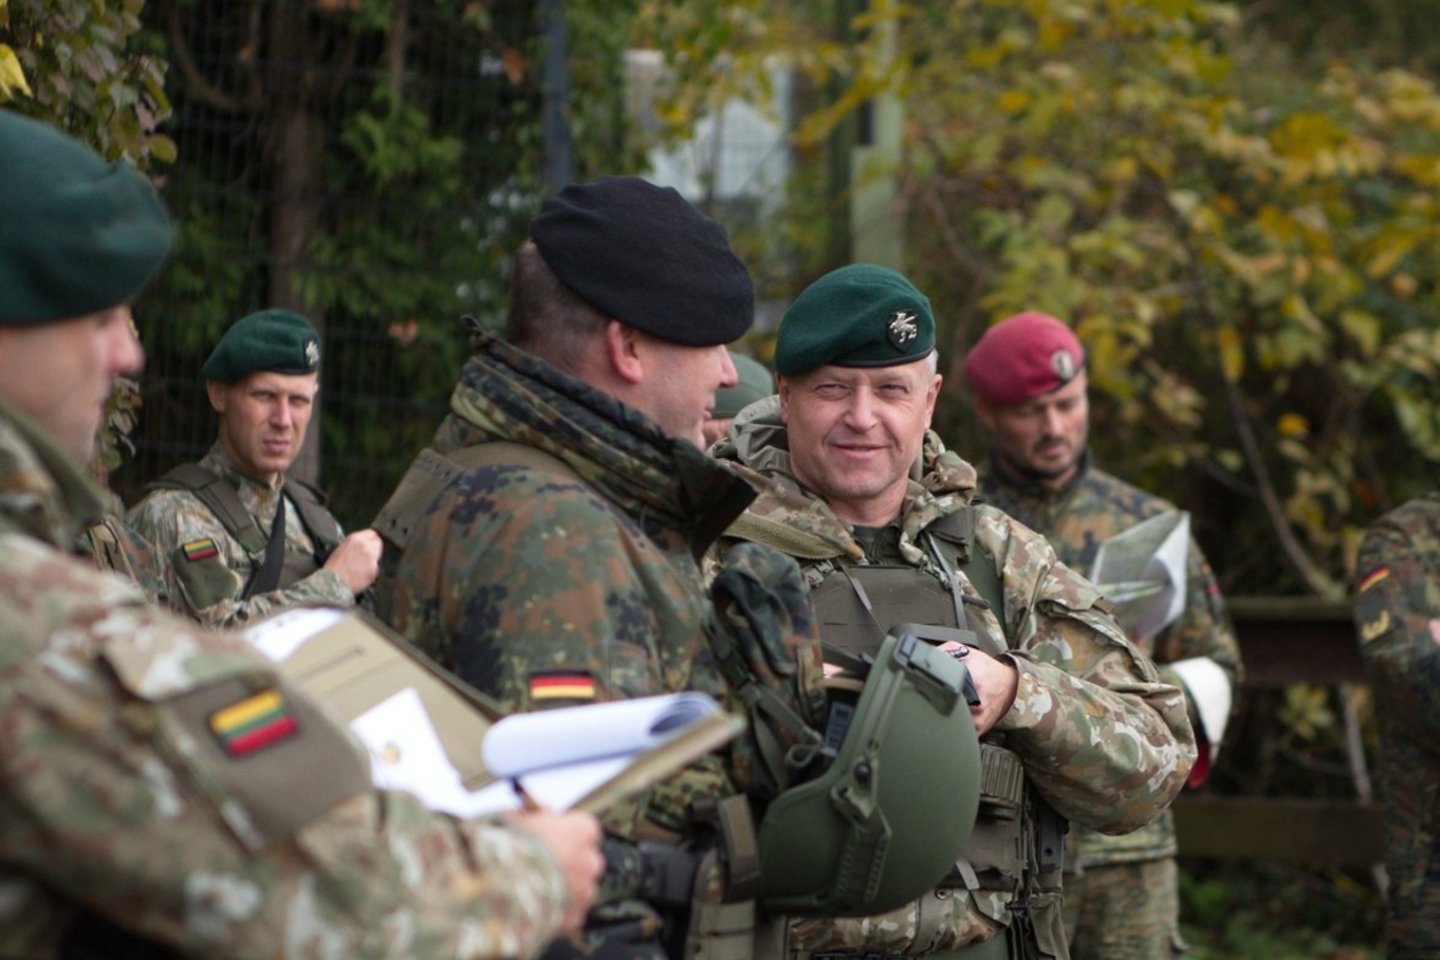 Tarptautinėse pratybose Lietuvos kariai su NATO sąjungininkais planuoja divizijos lygmens gynybos ir puolimo operacijas.<br> Lietuvos kariuomenės nuotr.